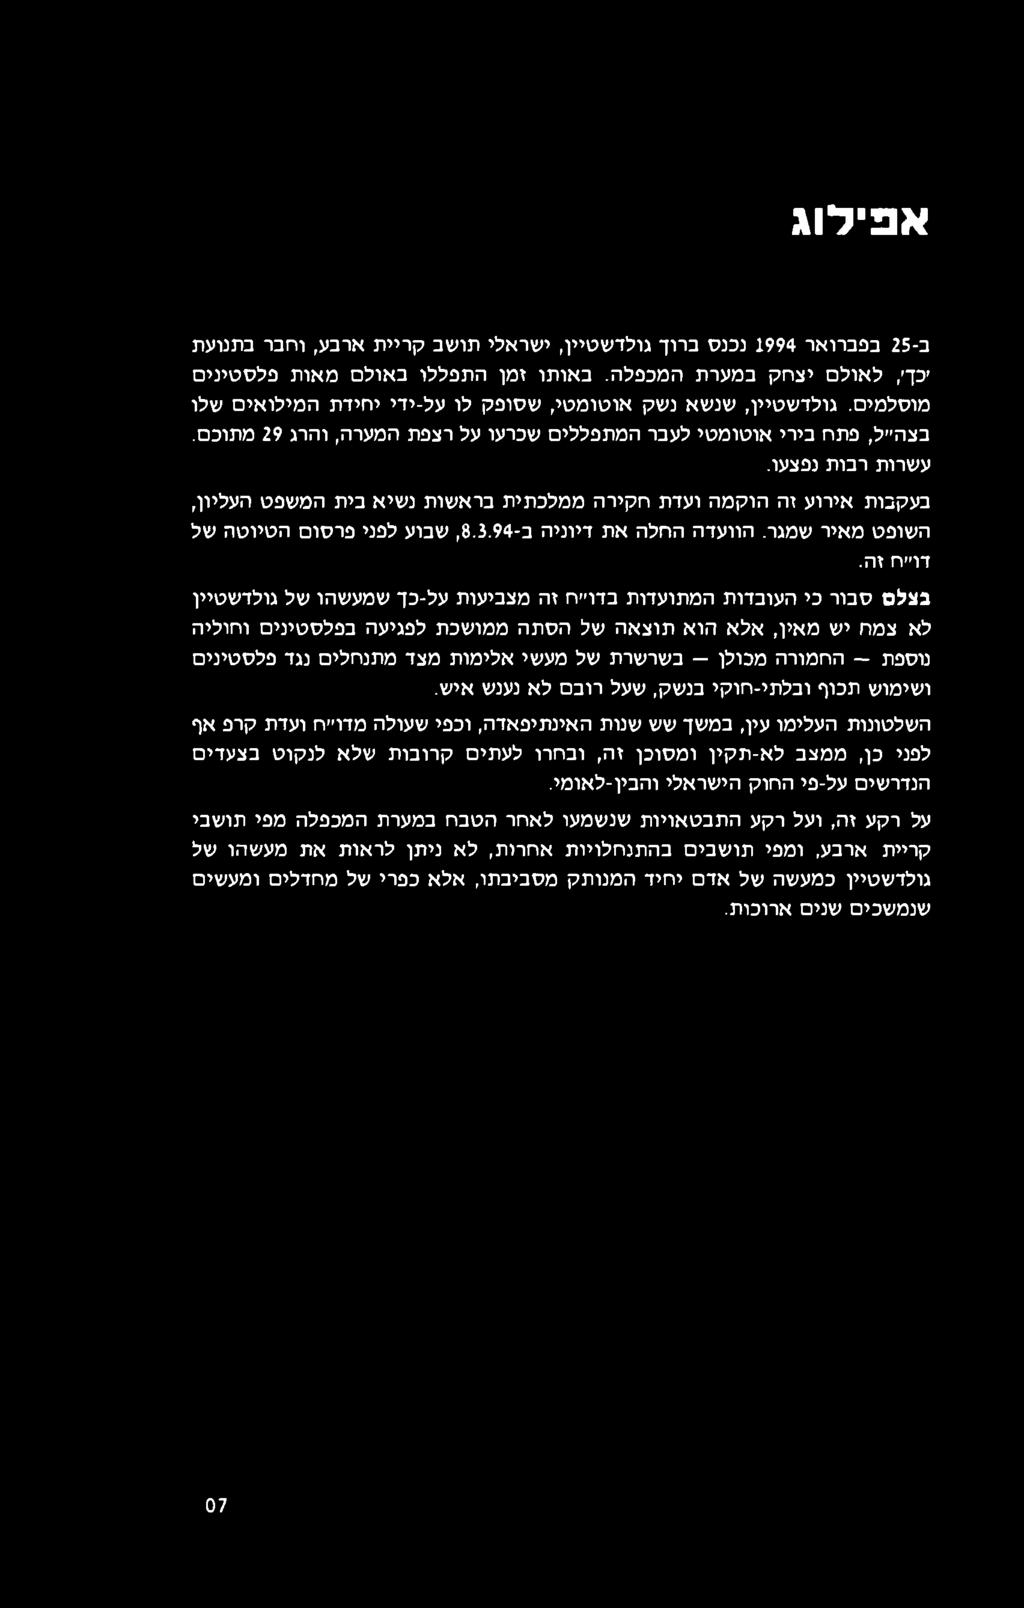 אפילוג ב- 25 בפברואר 1994 נכנס ברוך גולדשטיין, ישראלי תושב קריית ארבע, וחבר בתנועת יכך, לאולם יצחק במערת המכפלה. באותו זמן התפללו באולם מאות פלסטינים מוסלמים.